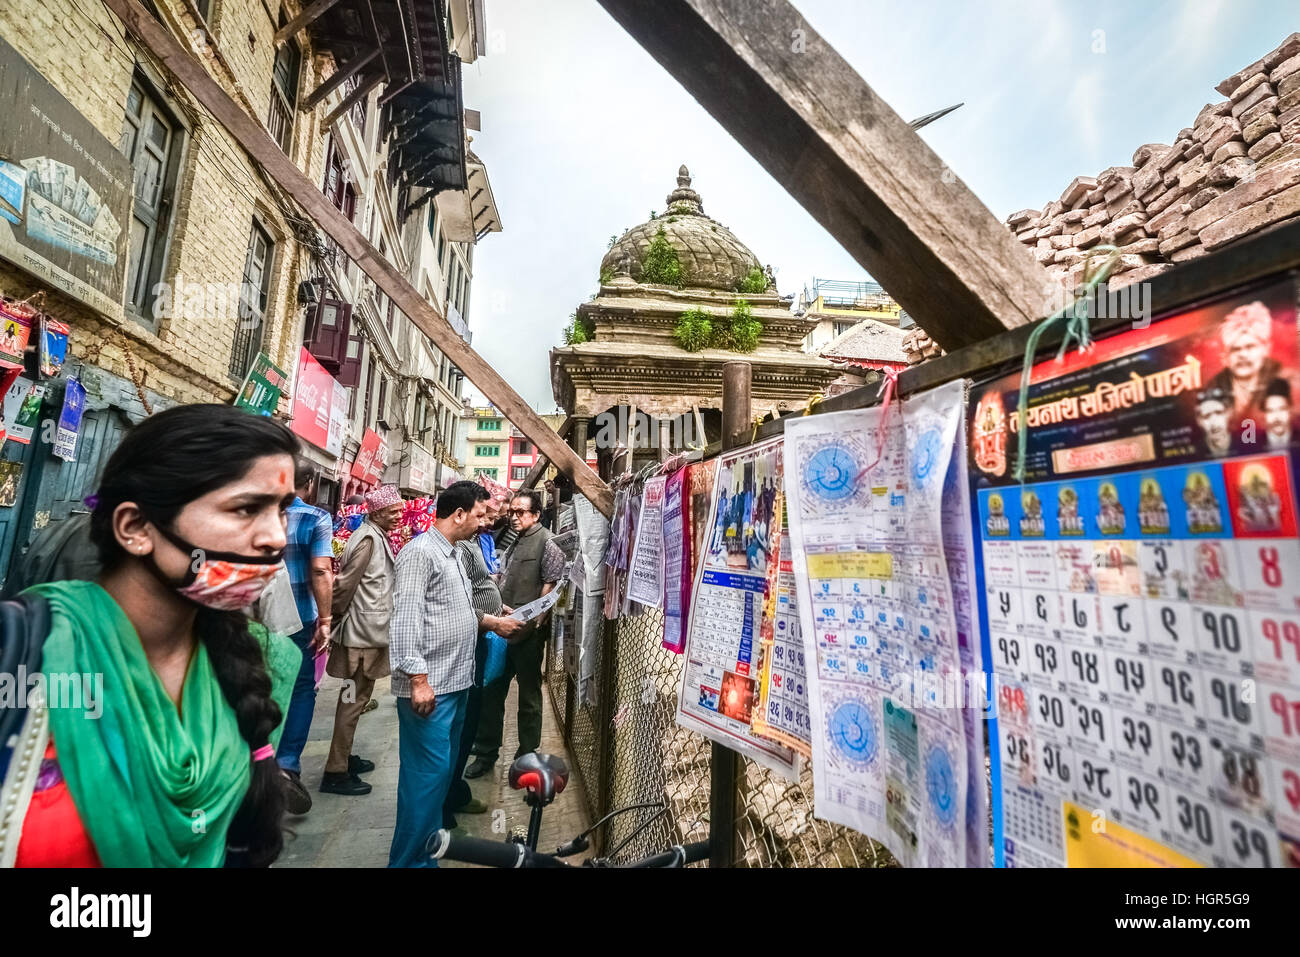 Una mujer lleva una máscara de polvo mientras presta atención a los calendarios que se venden en una tienda callejera en Katmandú, Nepal. Foto de stock